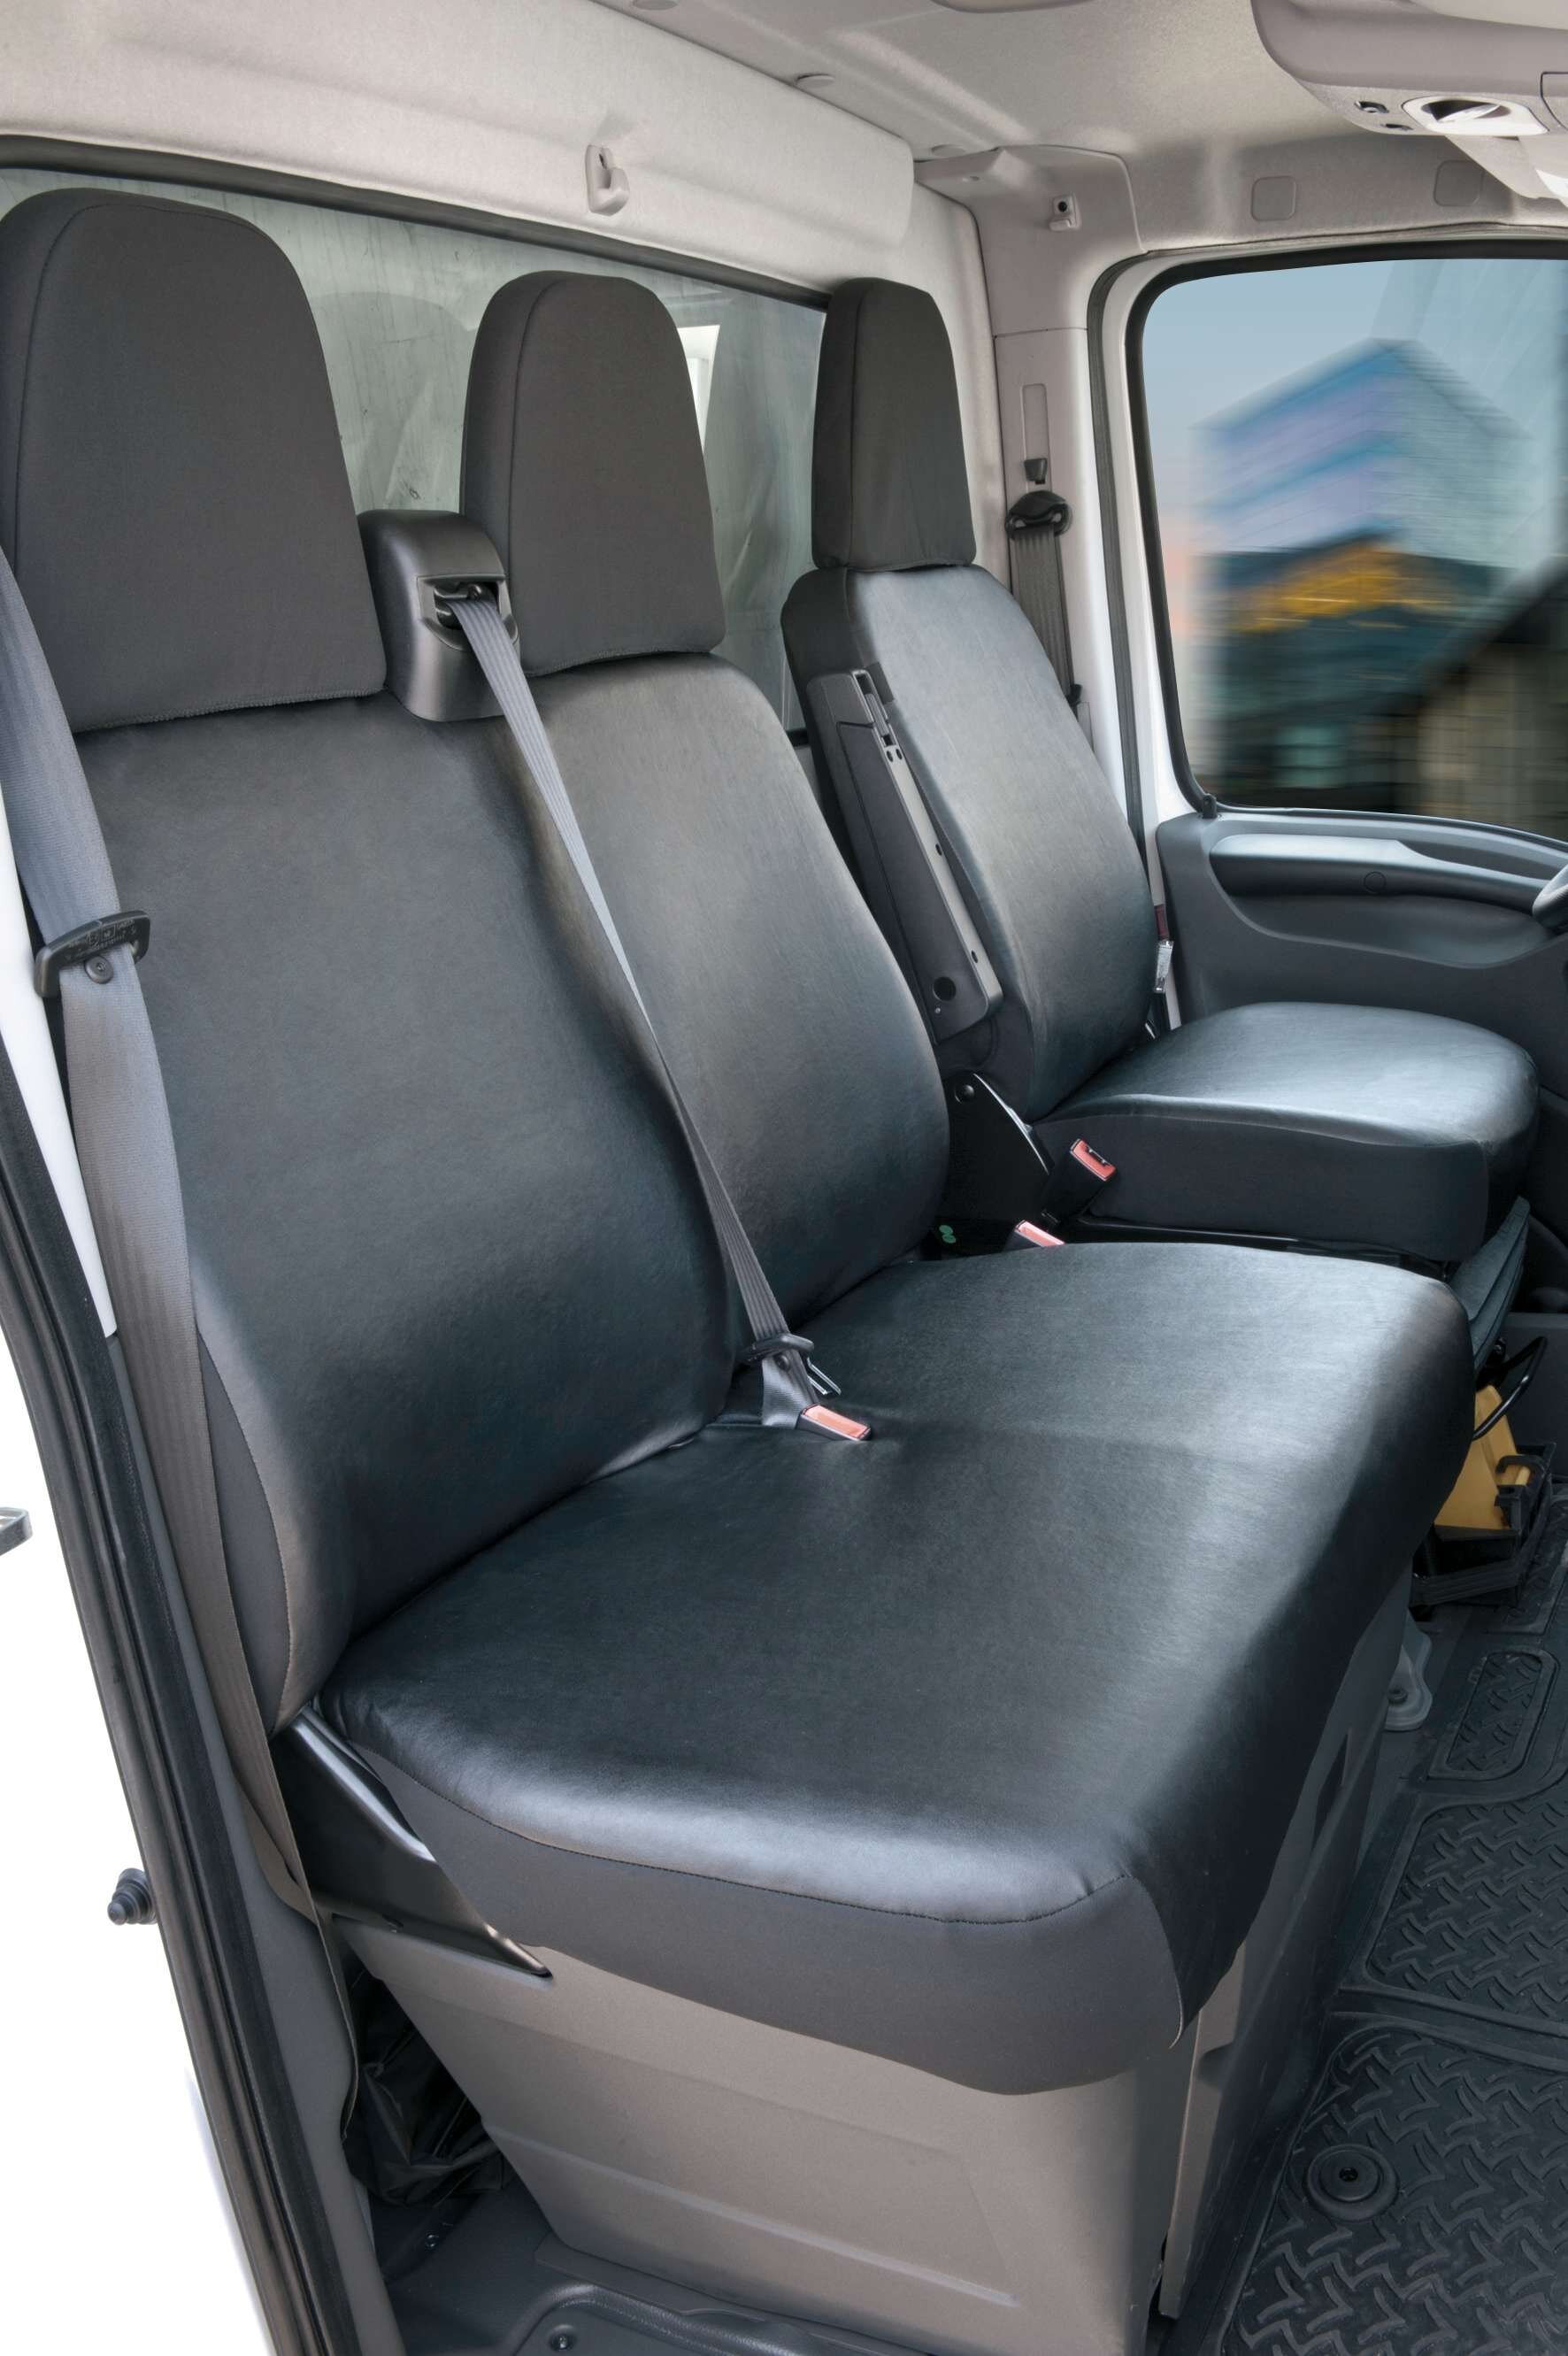 Housse de siège Transporter en simili cuir pour Citroën Jumper, Peugeot Boxer, Fiat Ducato, siège simple et double